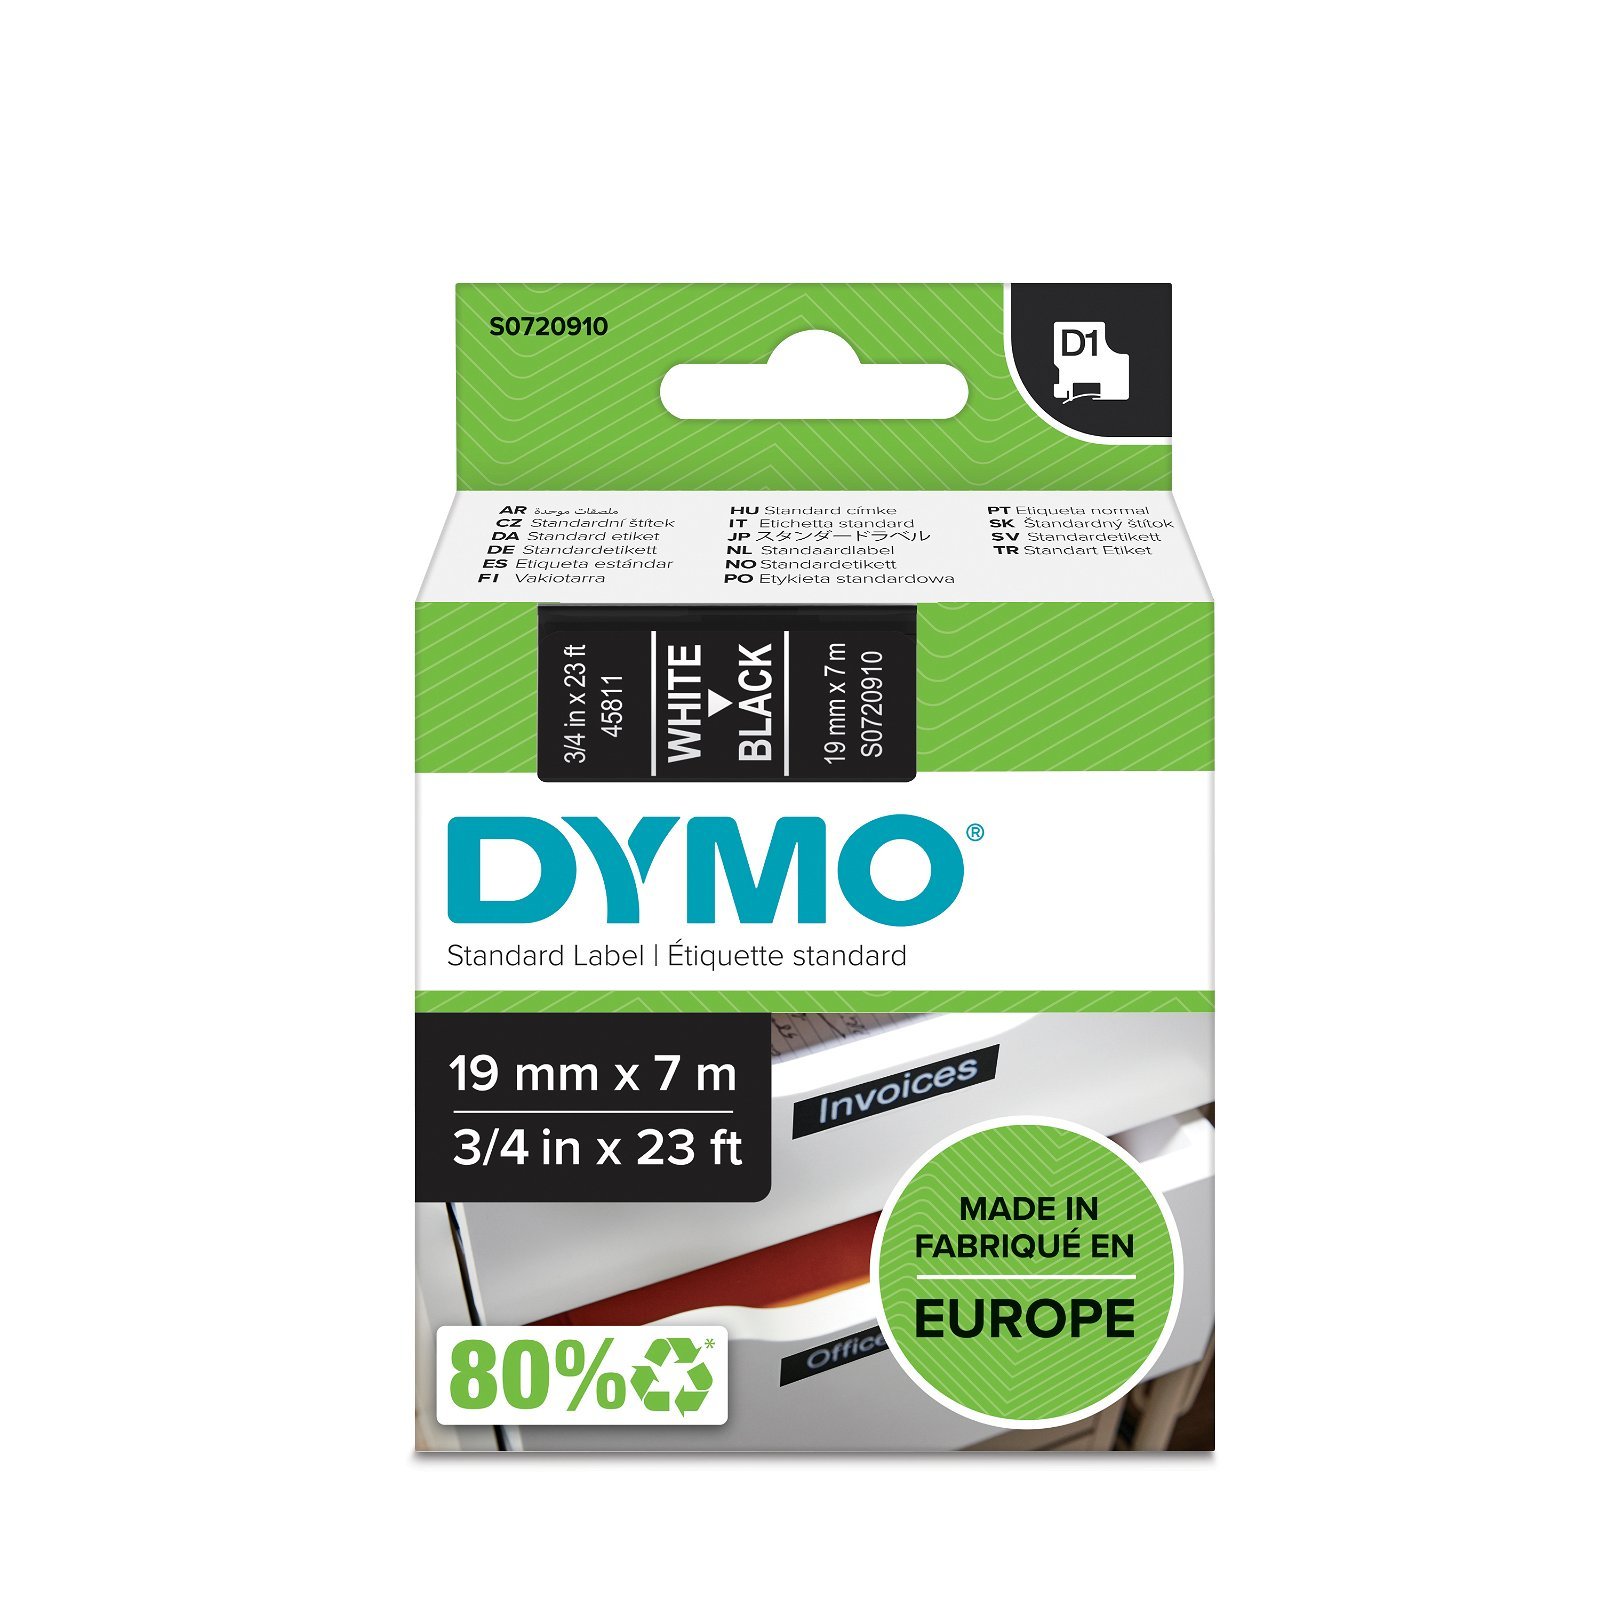 Dymo D1 standard tapekasette 19 mm hvid;sort Polyester